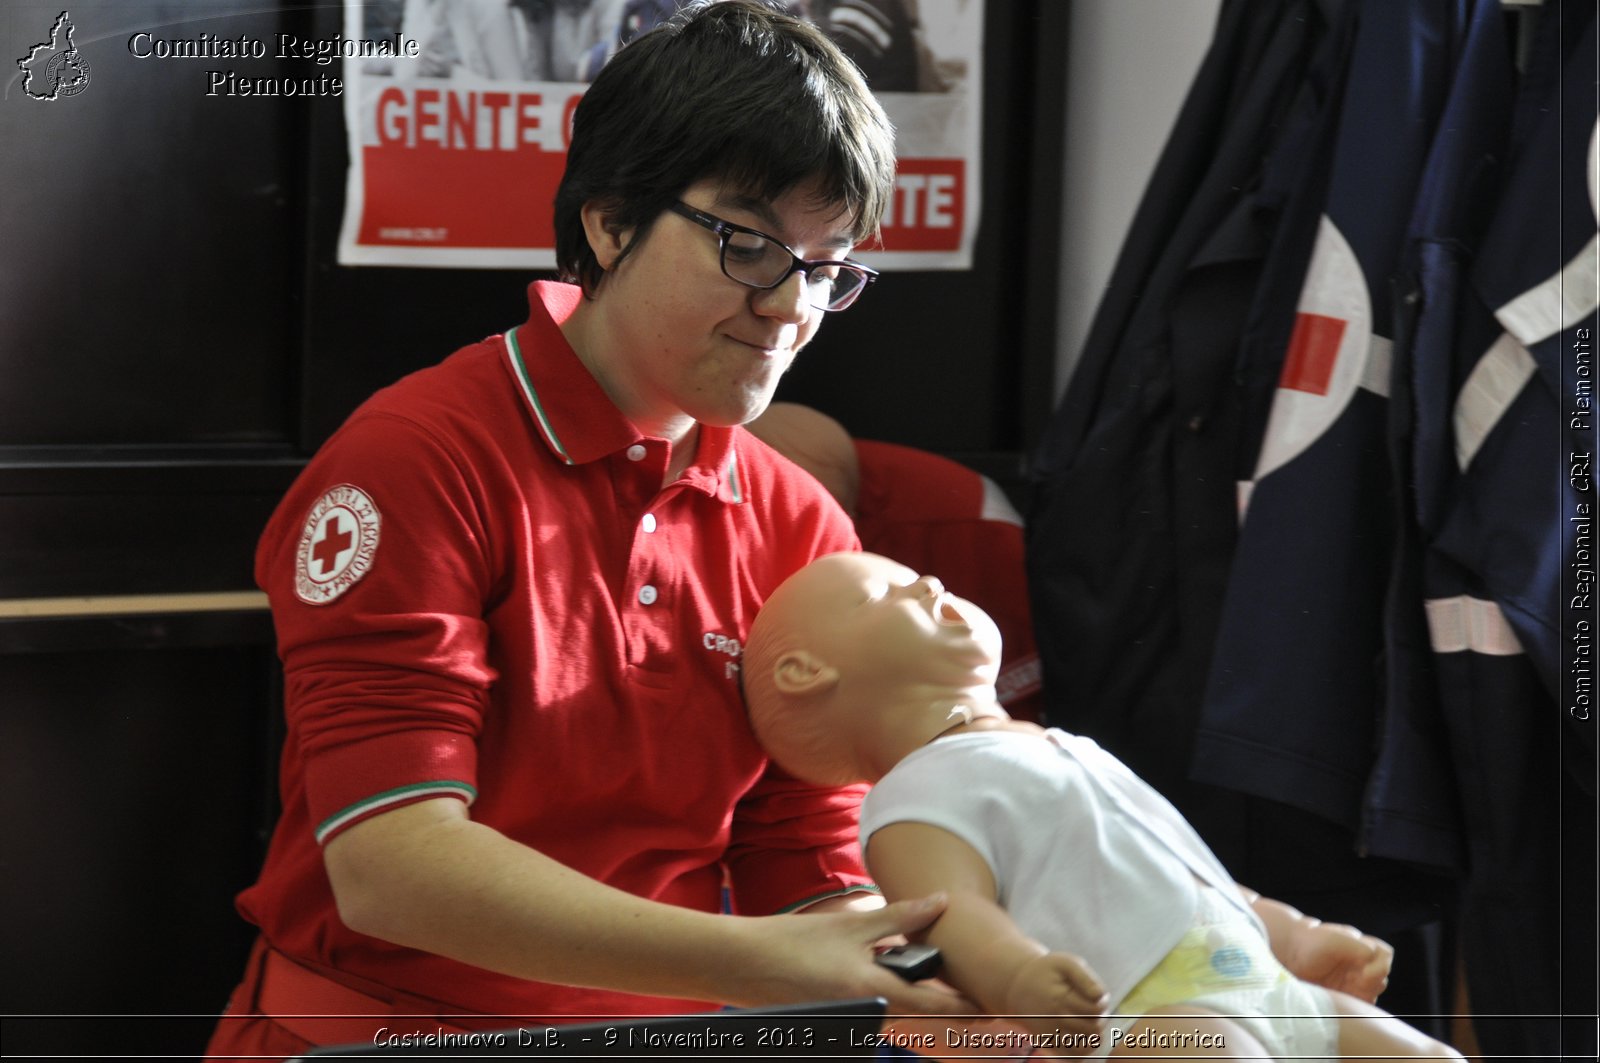 Castelnuovo D.B. - 9 Novembre 2013 - Lezione Disostruzione Pediatrica - Comitato Regionale del Piemonte